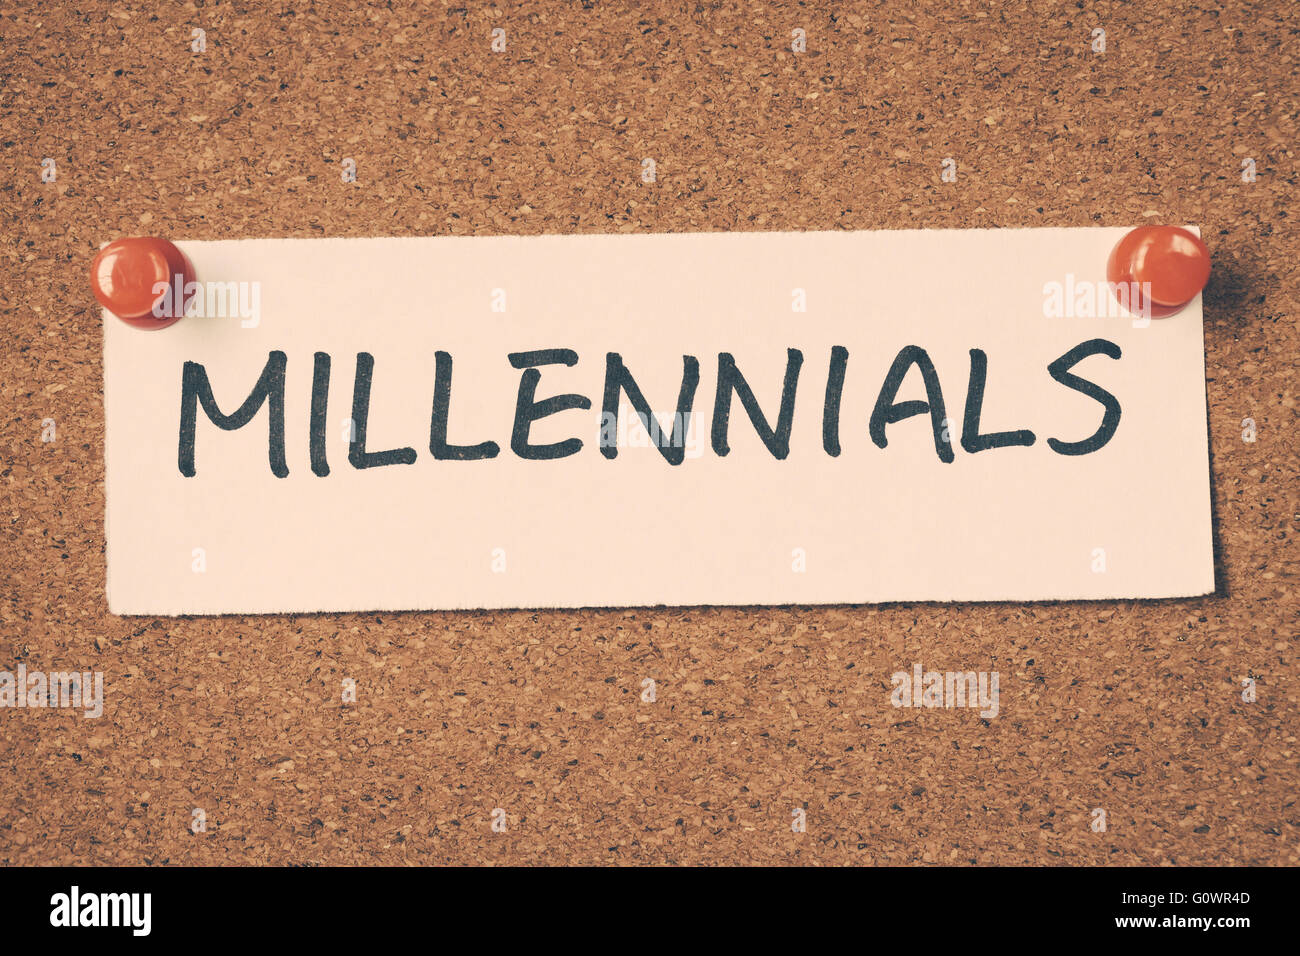 millennials Stock Photo